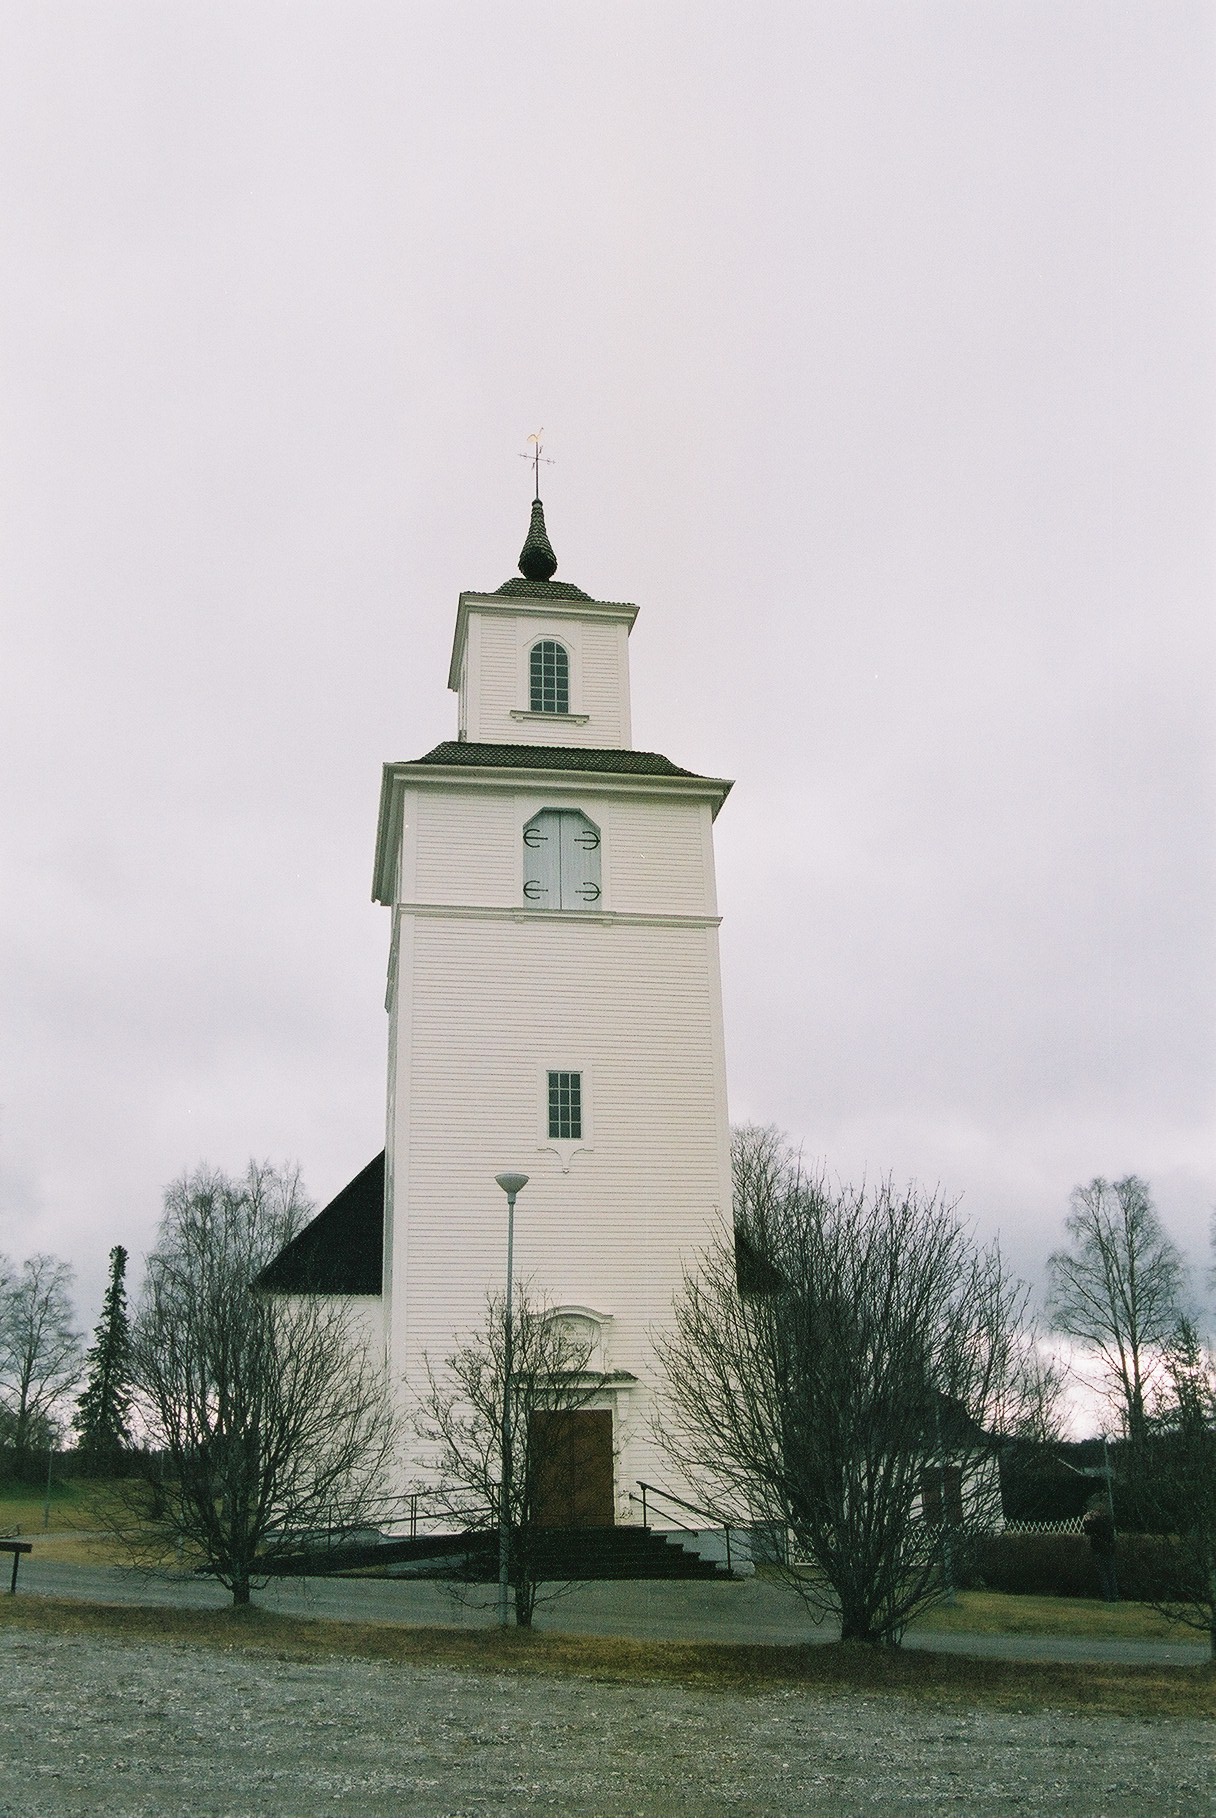 Fjällsjö kyrka med omgivande kyrkogård, vy från väster.

Bilderna är tagna av Isa Lindkvist & Christina Persson från Jämtlands läns museum i samband med inventeringen, 2005-2006. 